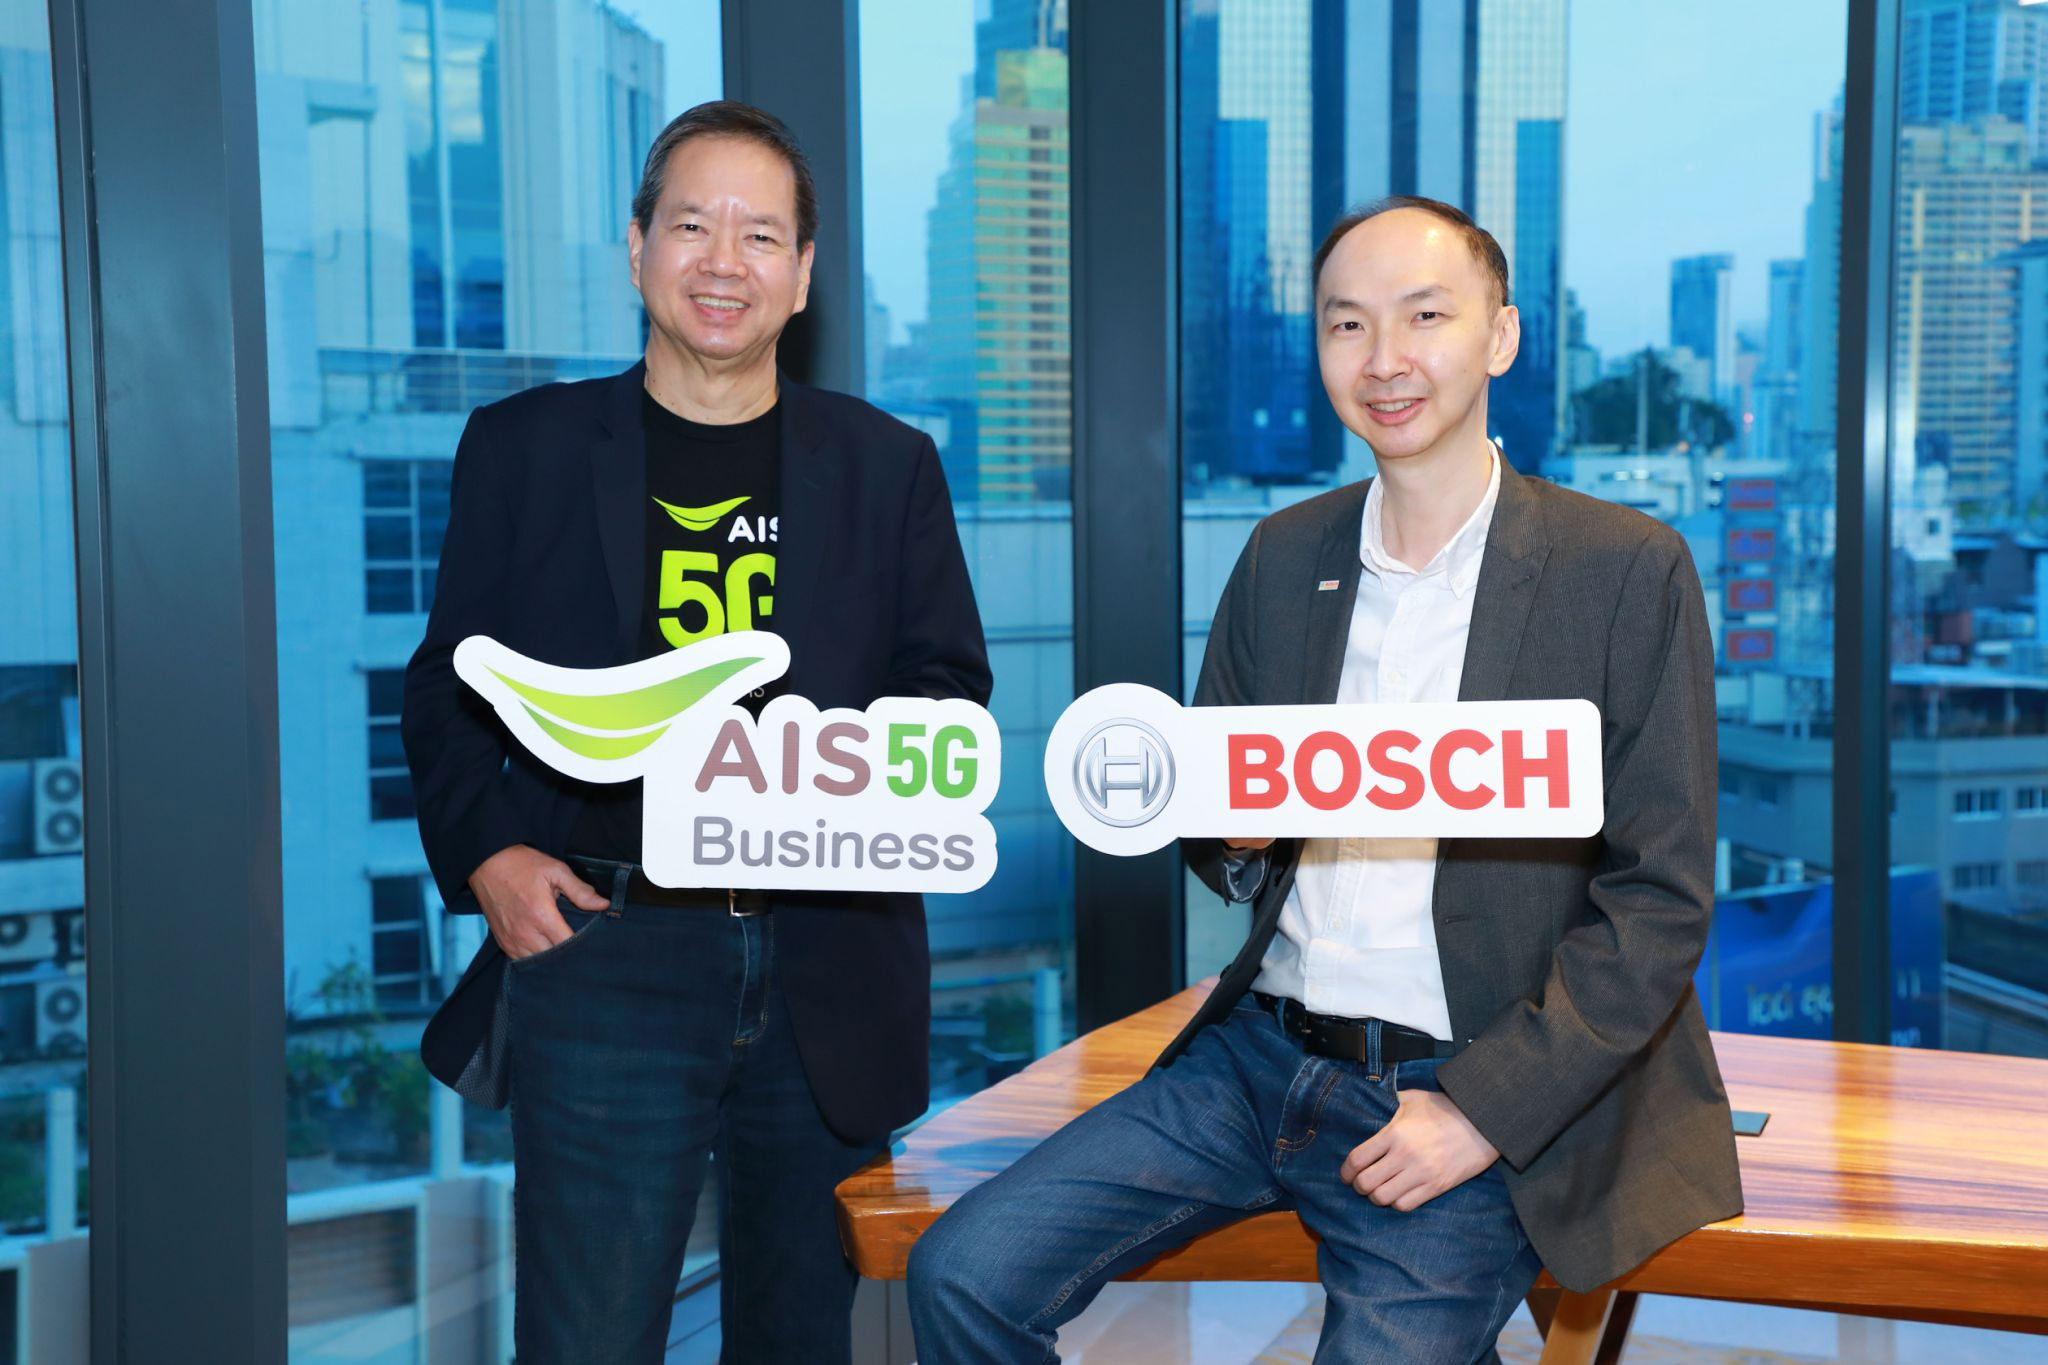 AIS ร่วมมือ BOSCH ยกระดับอุตสาหกรรมสู่ Smart Manufacturing 4.0 ผนึกกำลังร่วมทดลองทดสอบเครือข่าย 5G ในพื้นที่โรงงานจริง ครั้งแรกในไทย